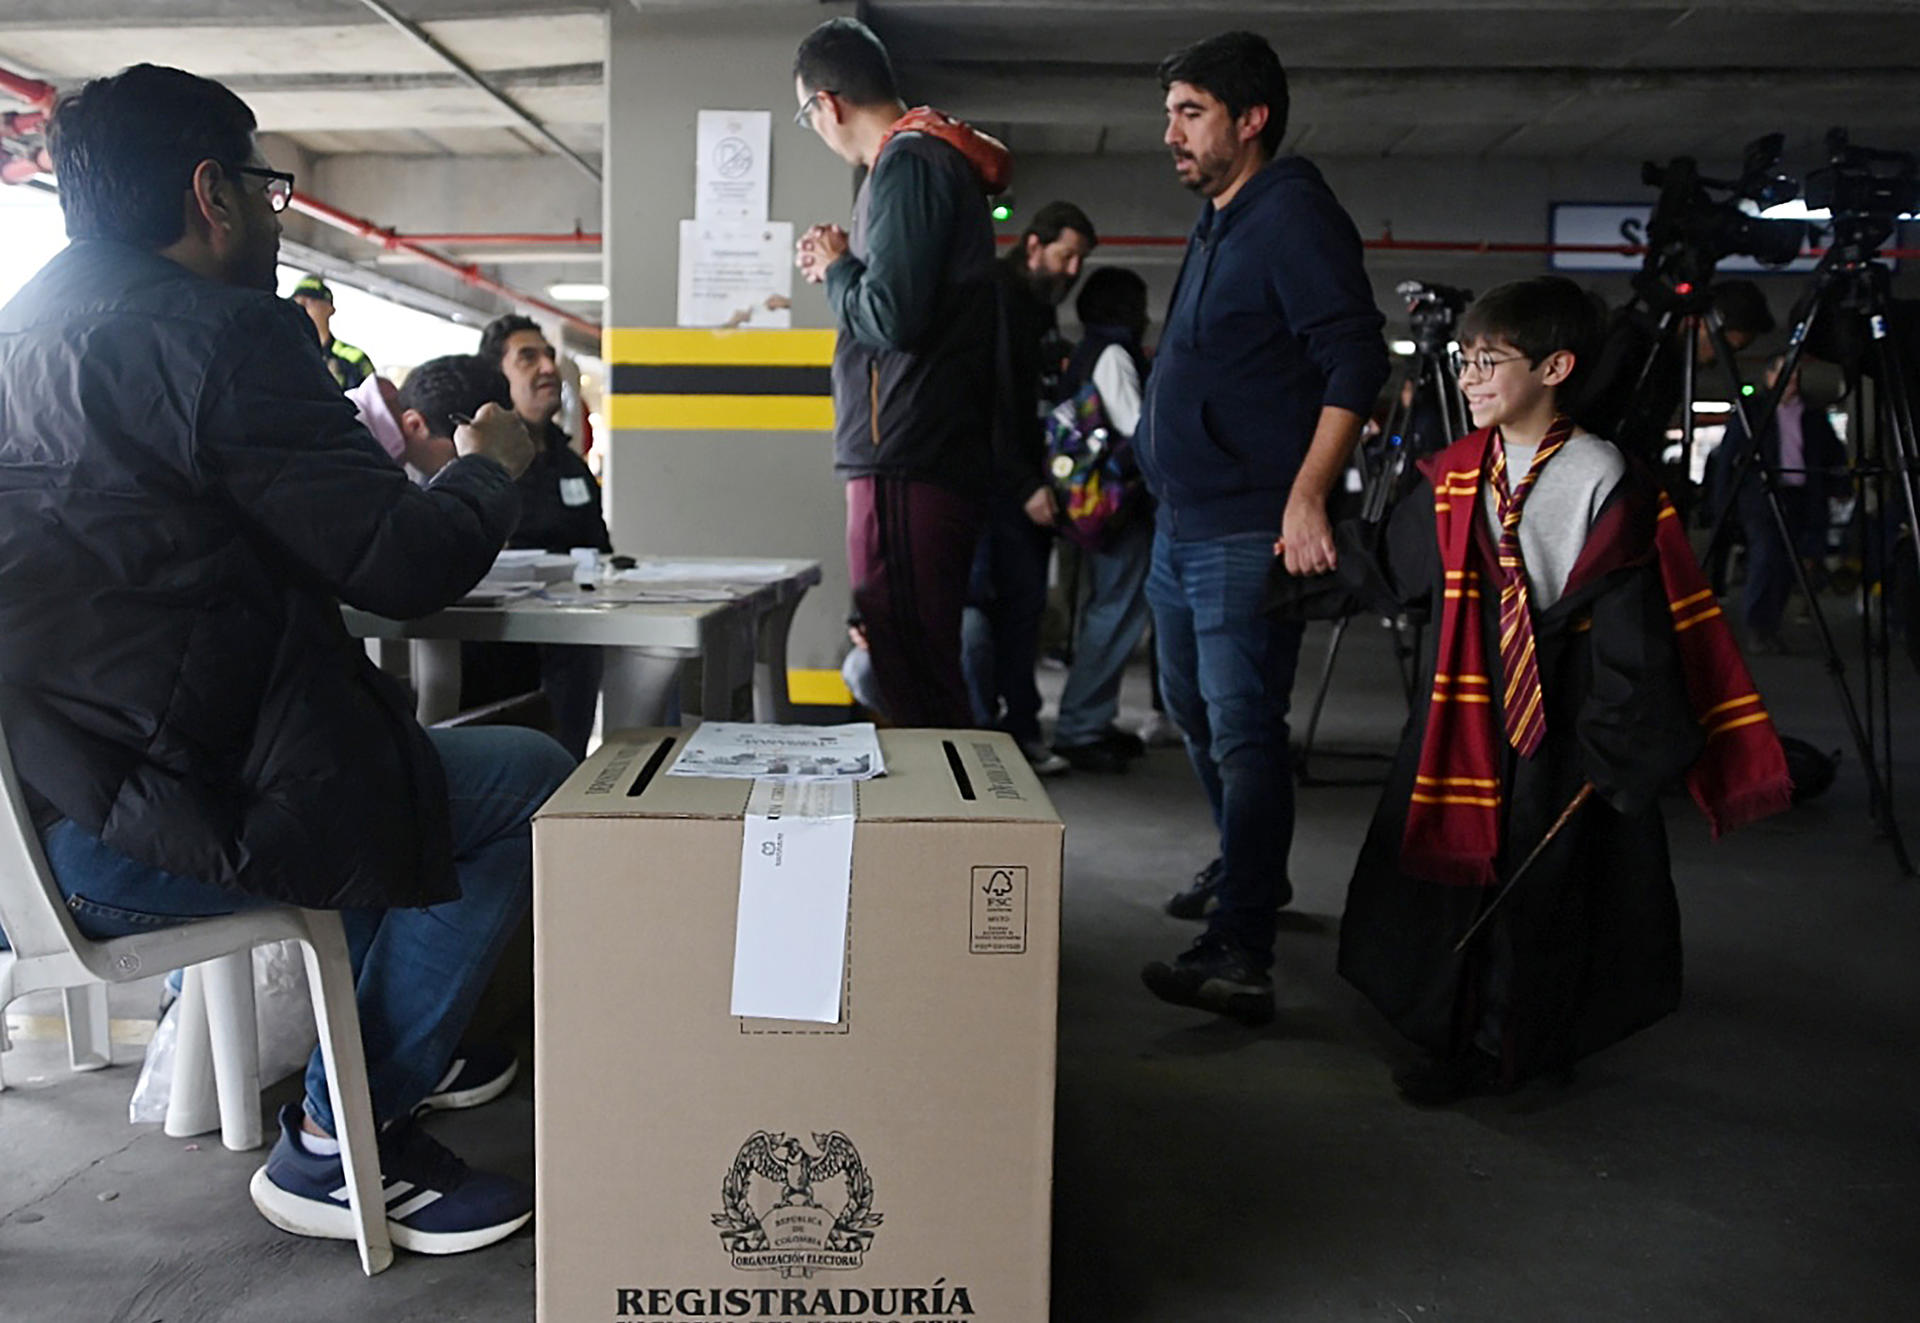 El voto en blanco gana en Gamarra, pueblo colombiano donde hubo asonada electoral